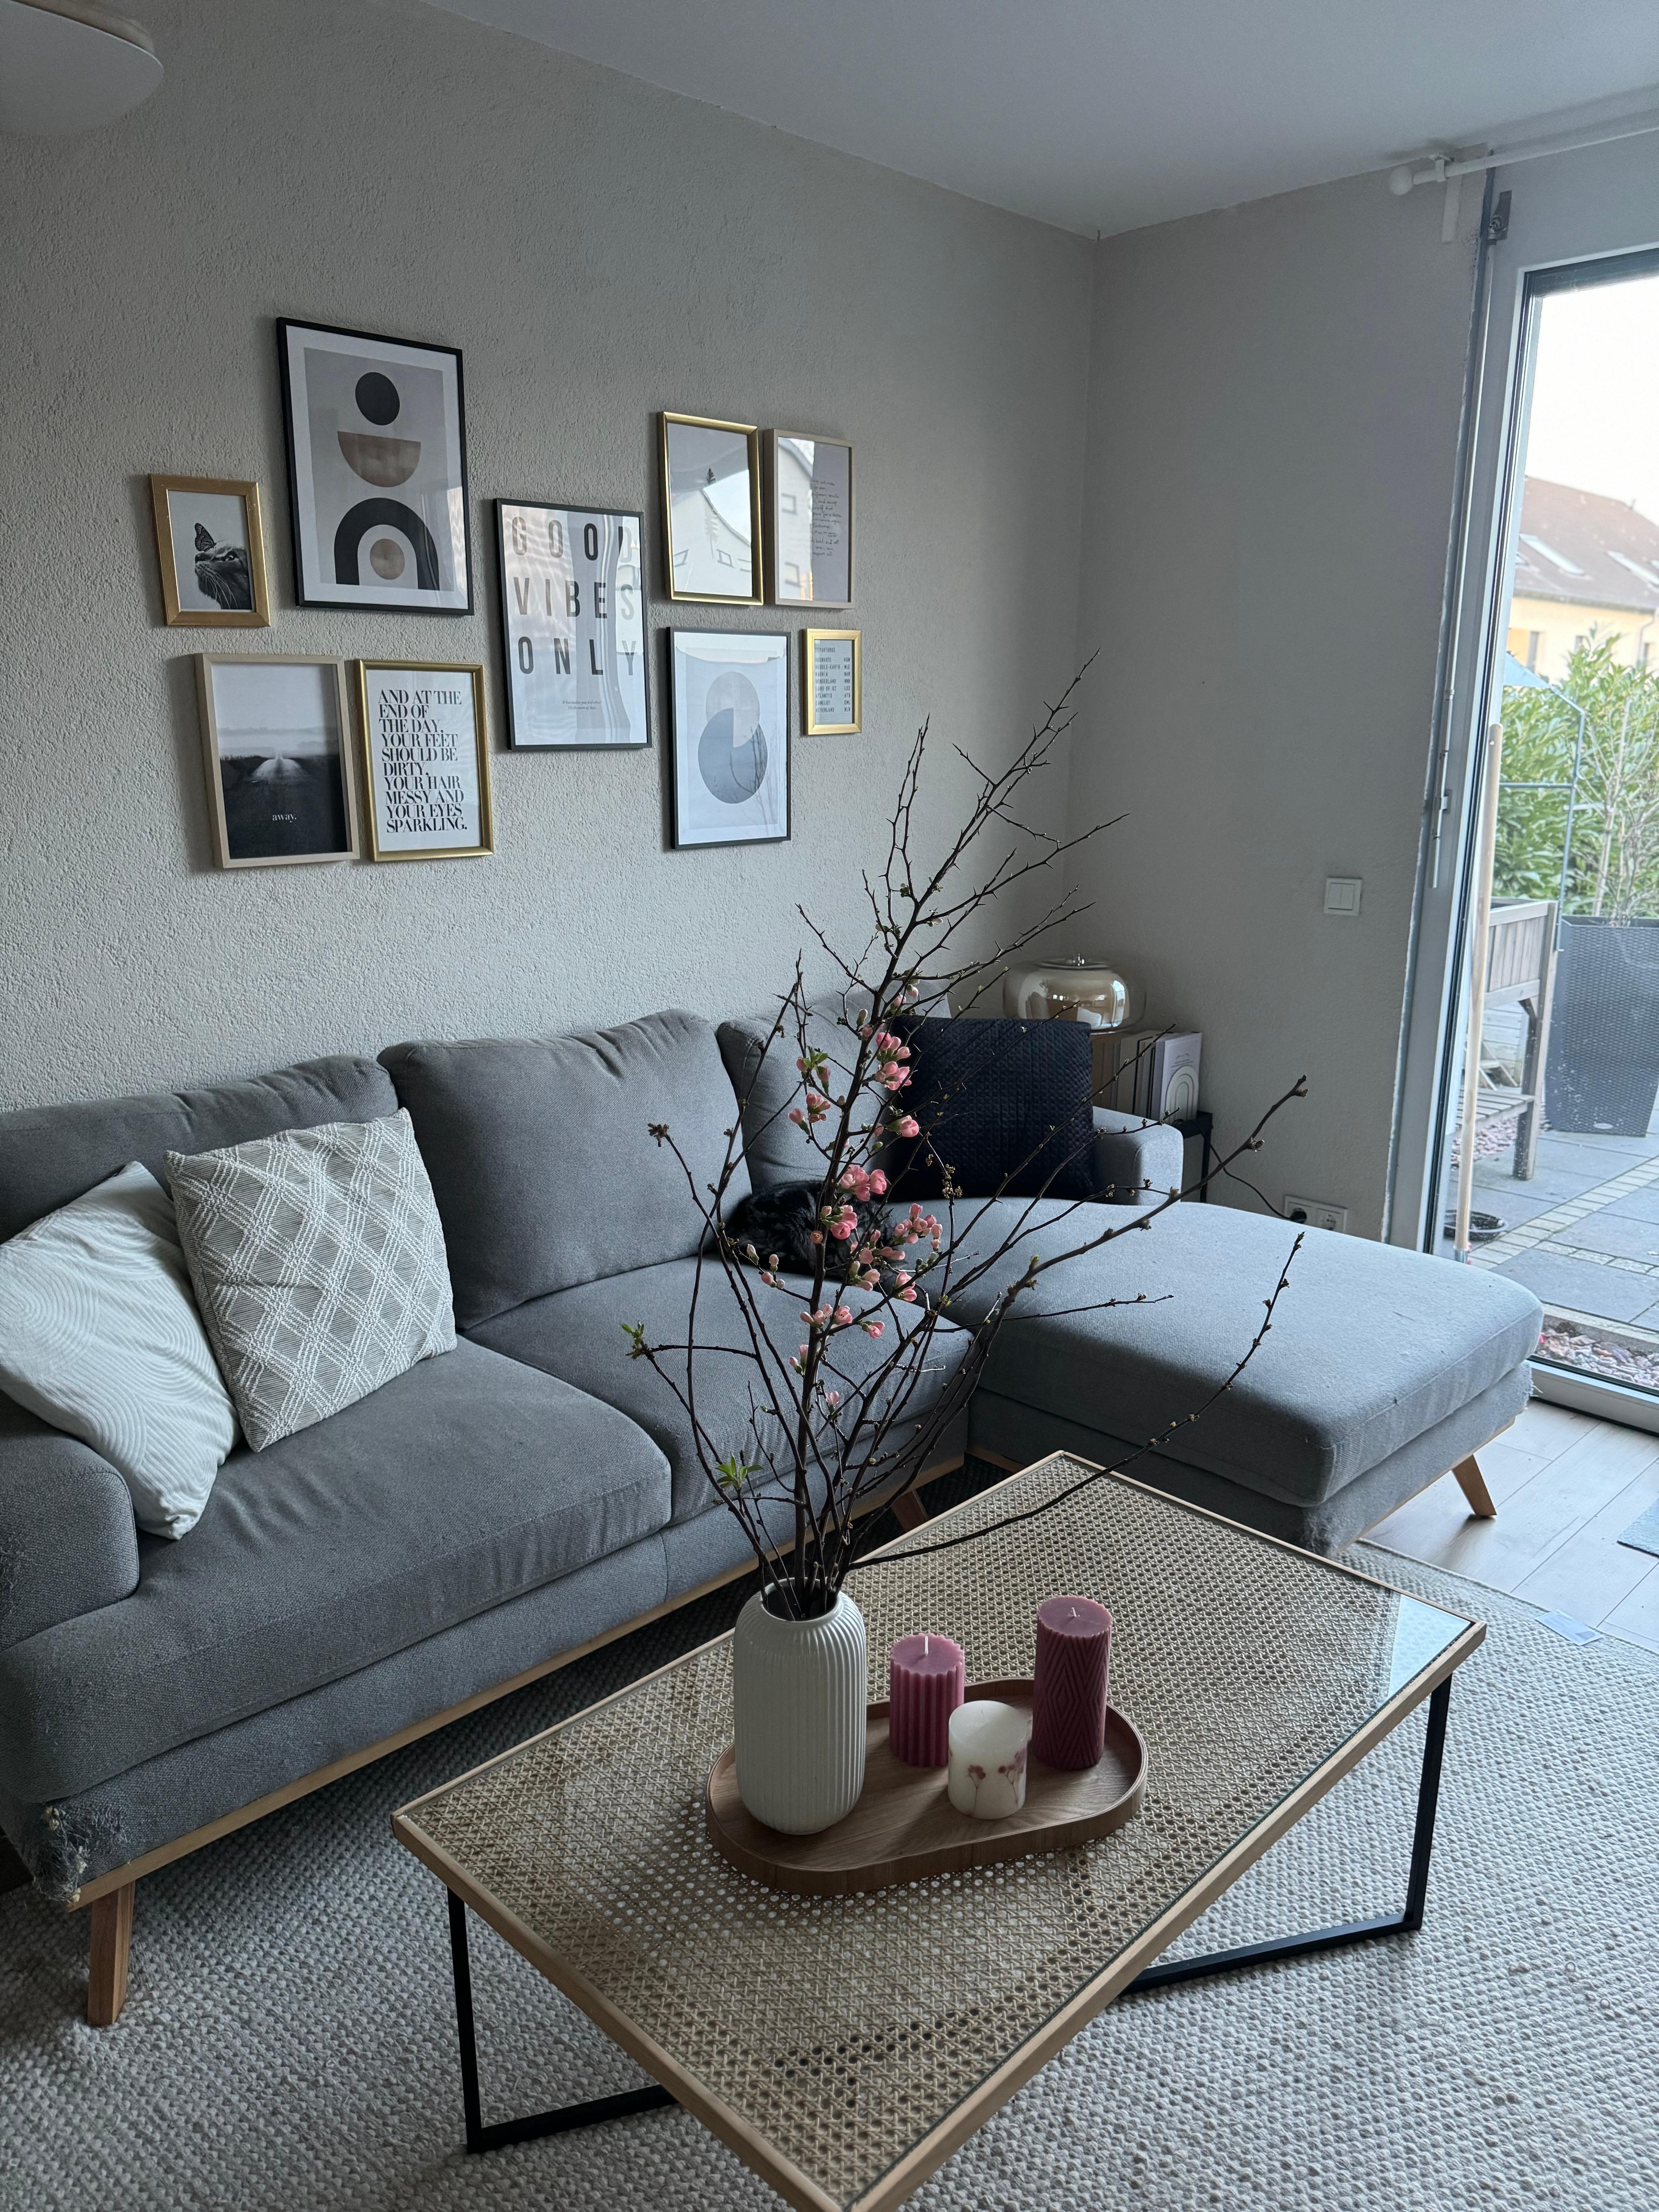 Wohnzimmer #livingroom #cosy #wohnzimmer #interior #couchstyle